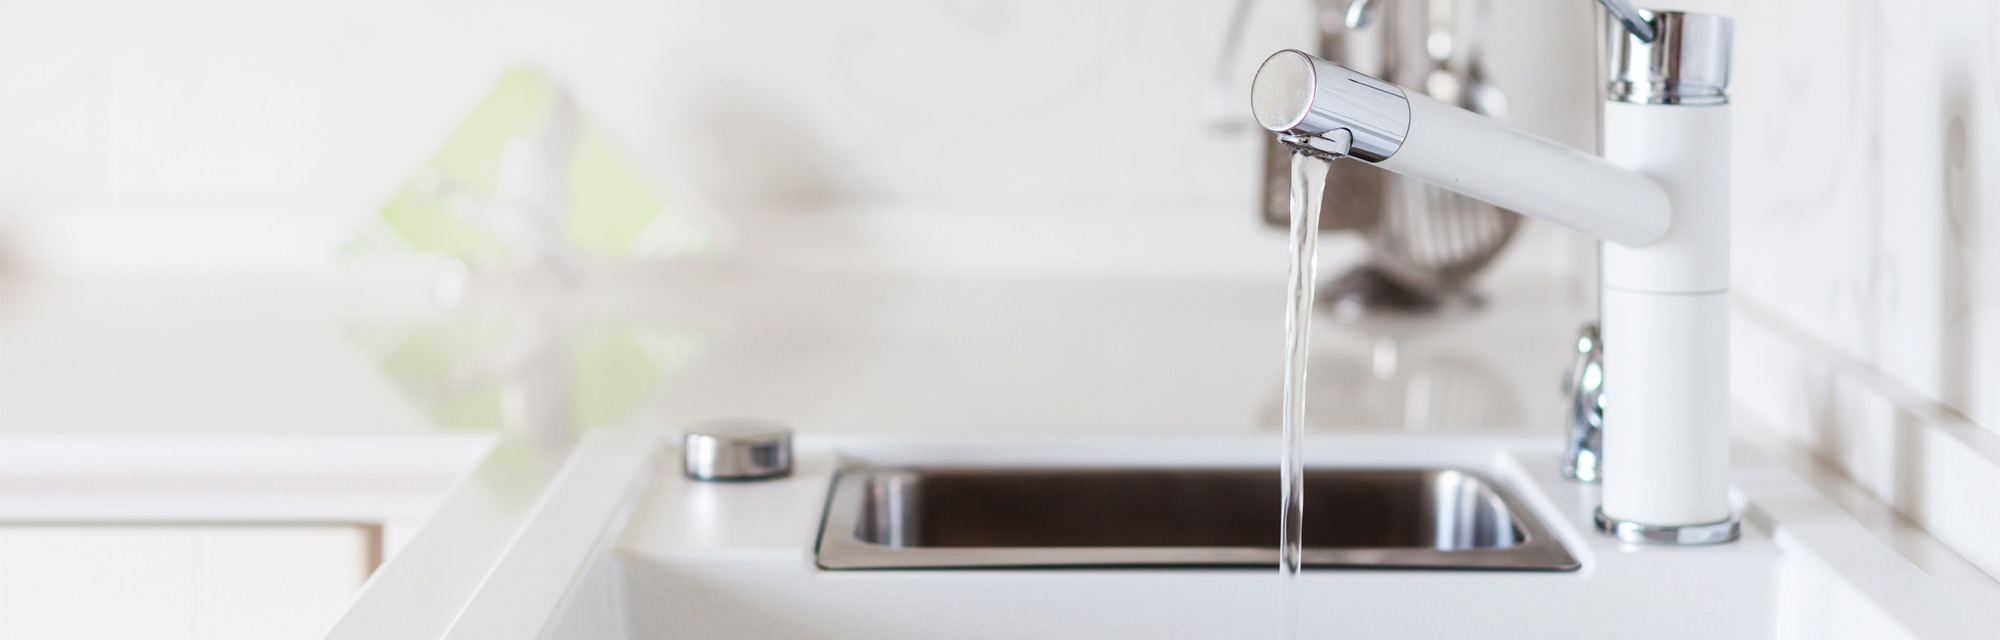 Modern Designer Chrome Water Tap Over White Kitchen Sink